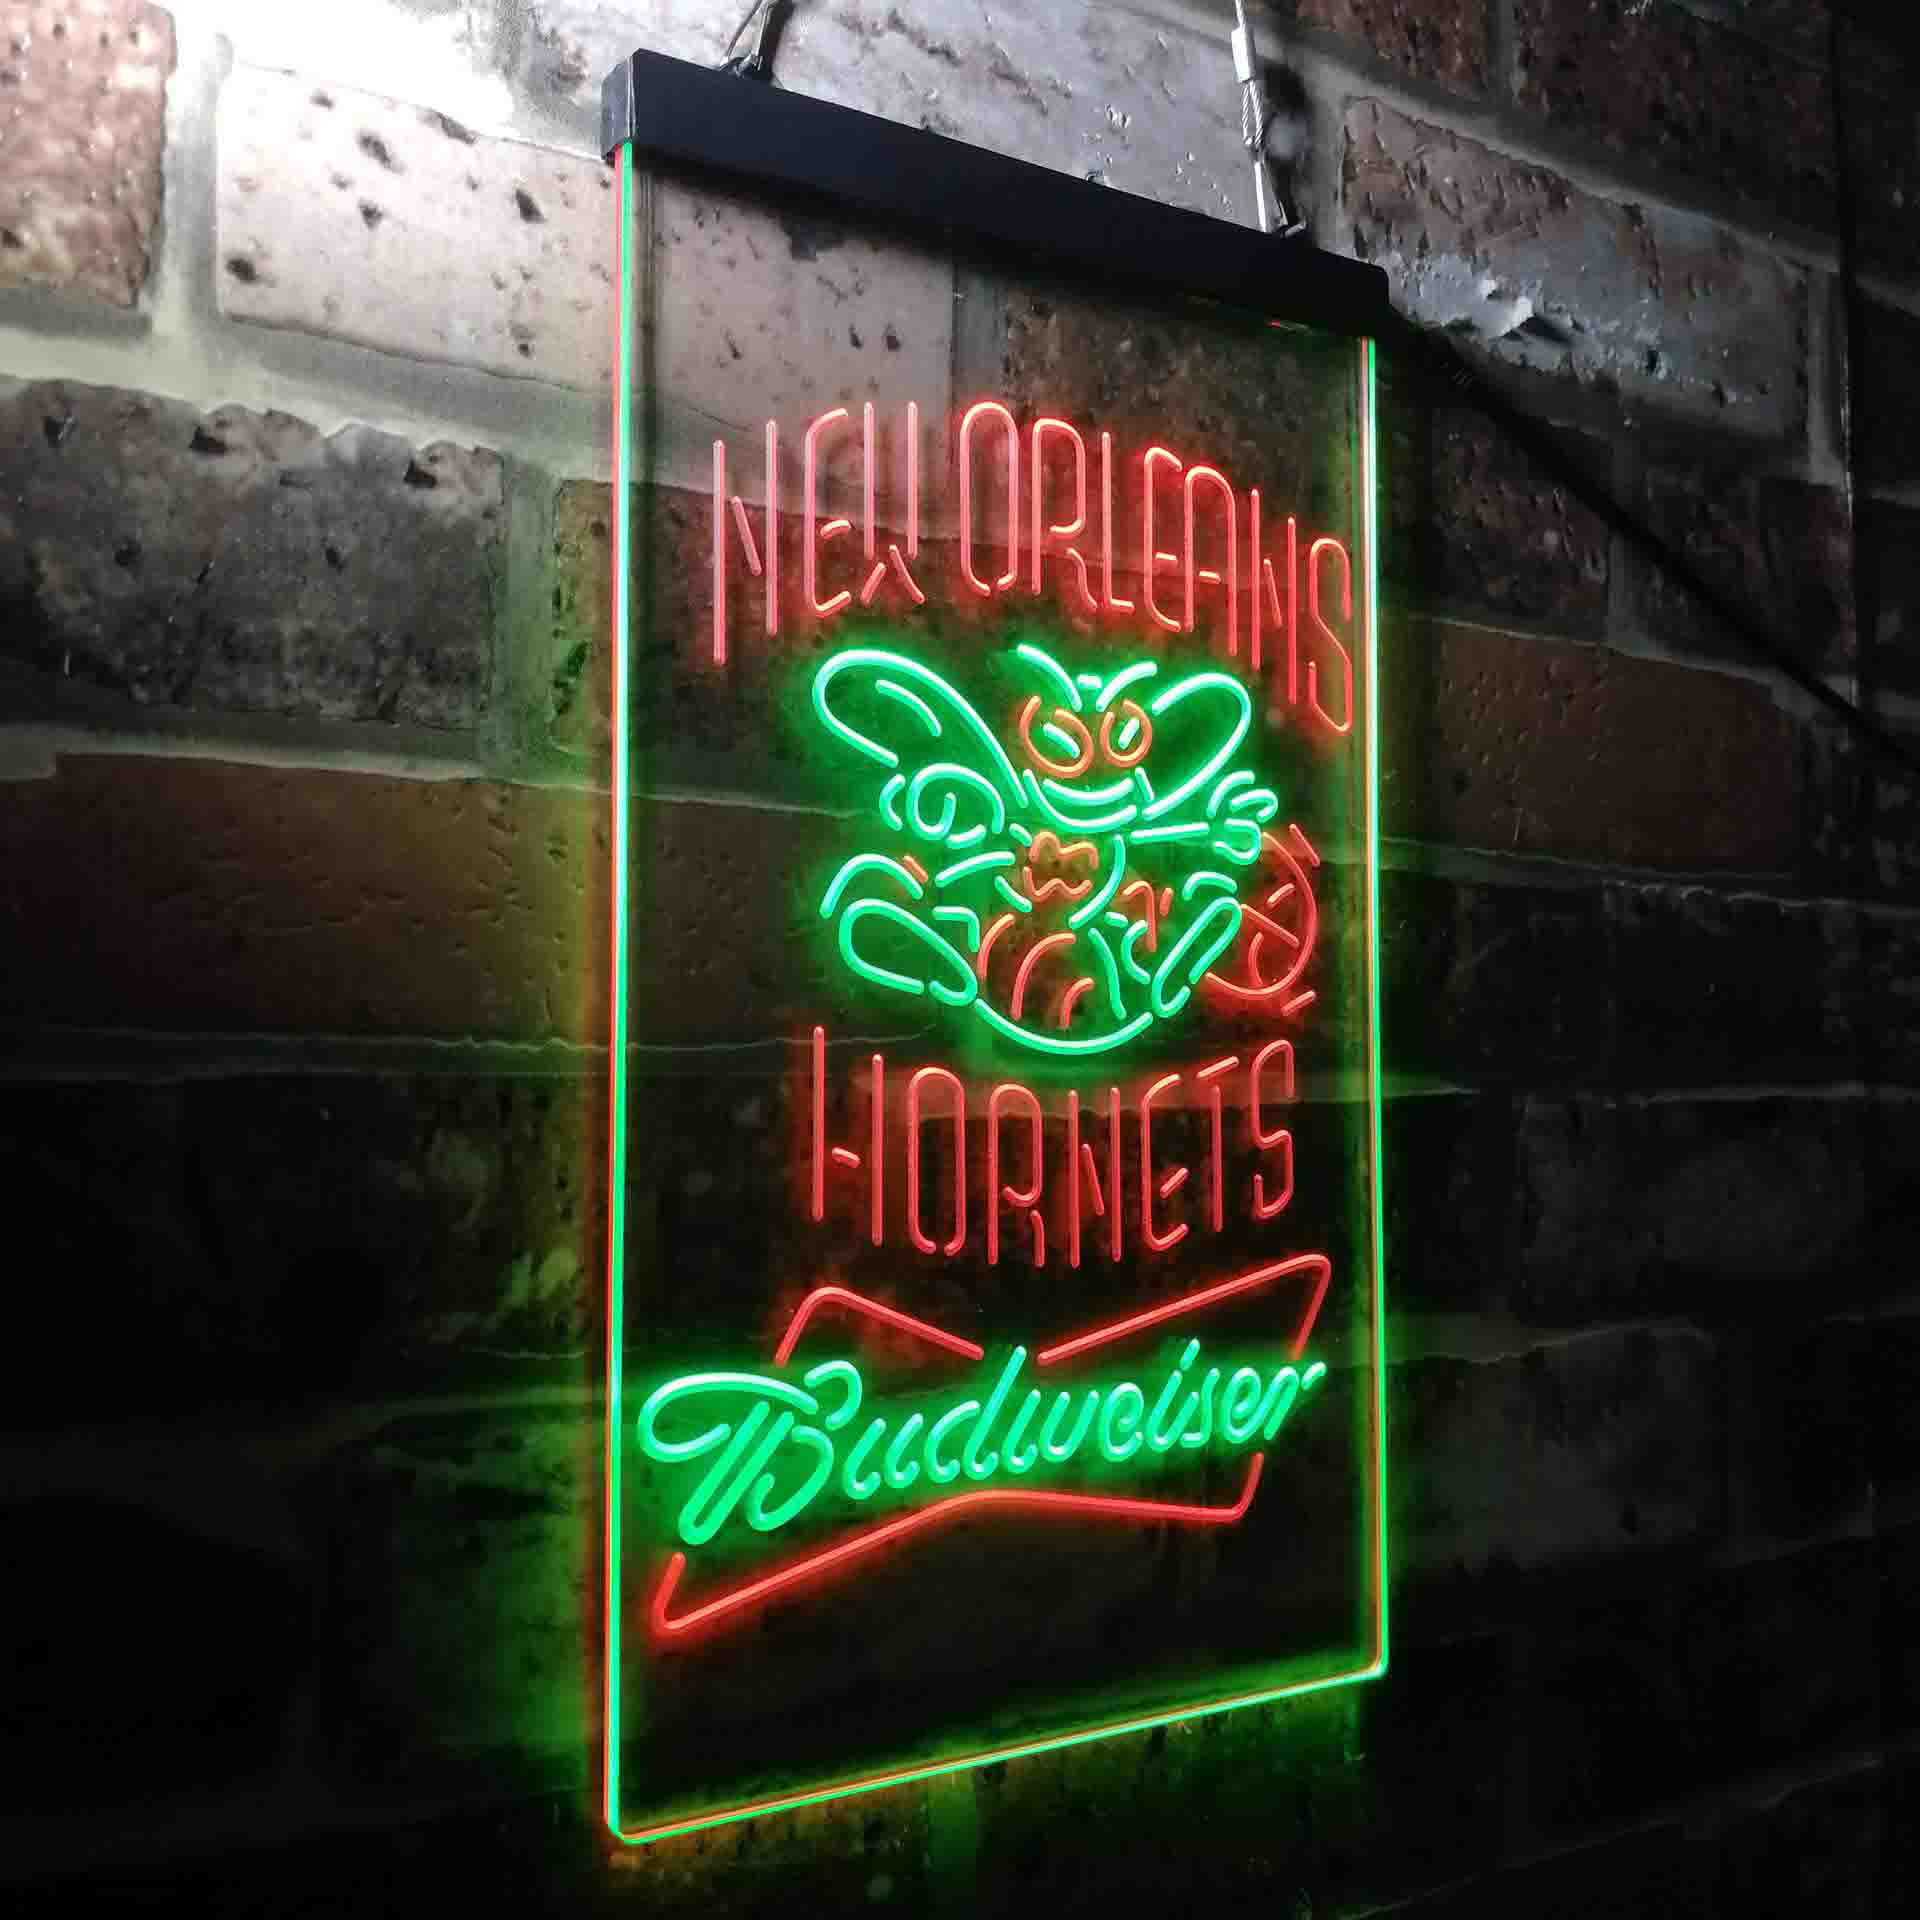 New Orleans Hornets Budweiser LED Neon Sign